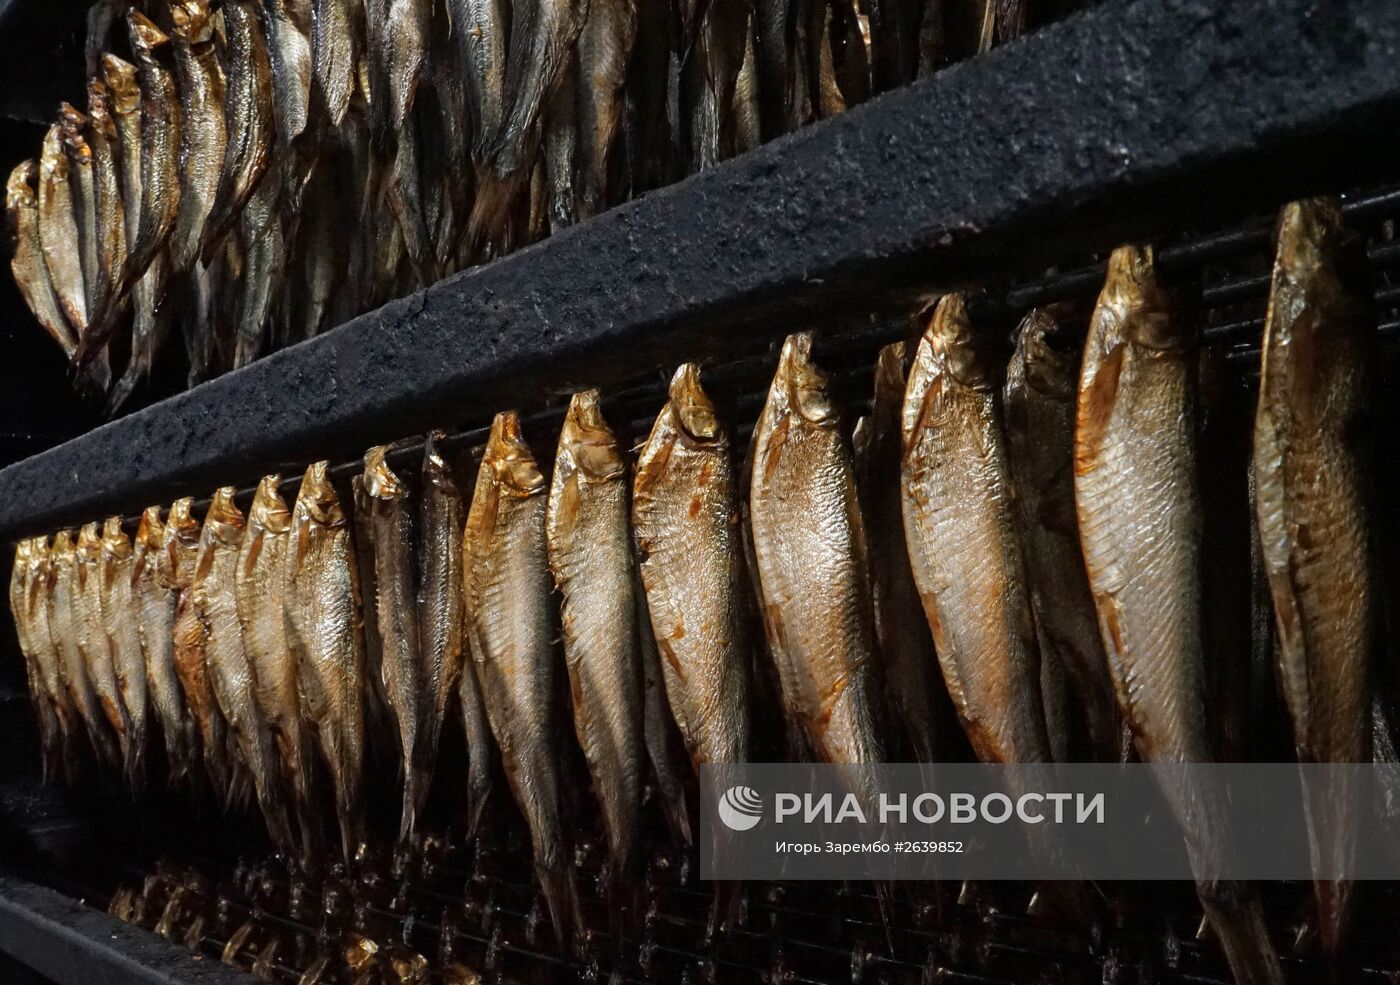 Рыбокомбинат "За Родину" в Калининградской области